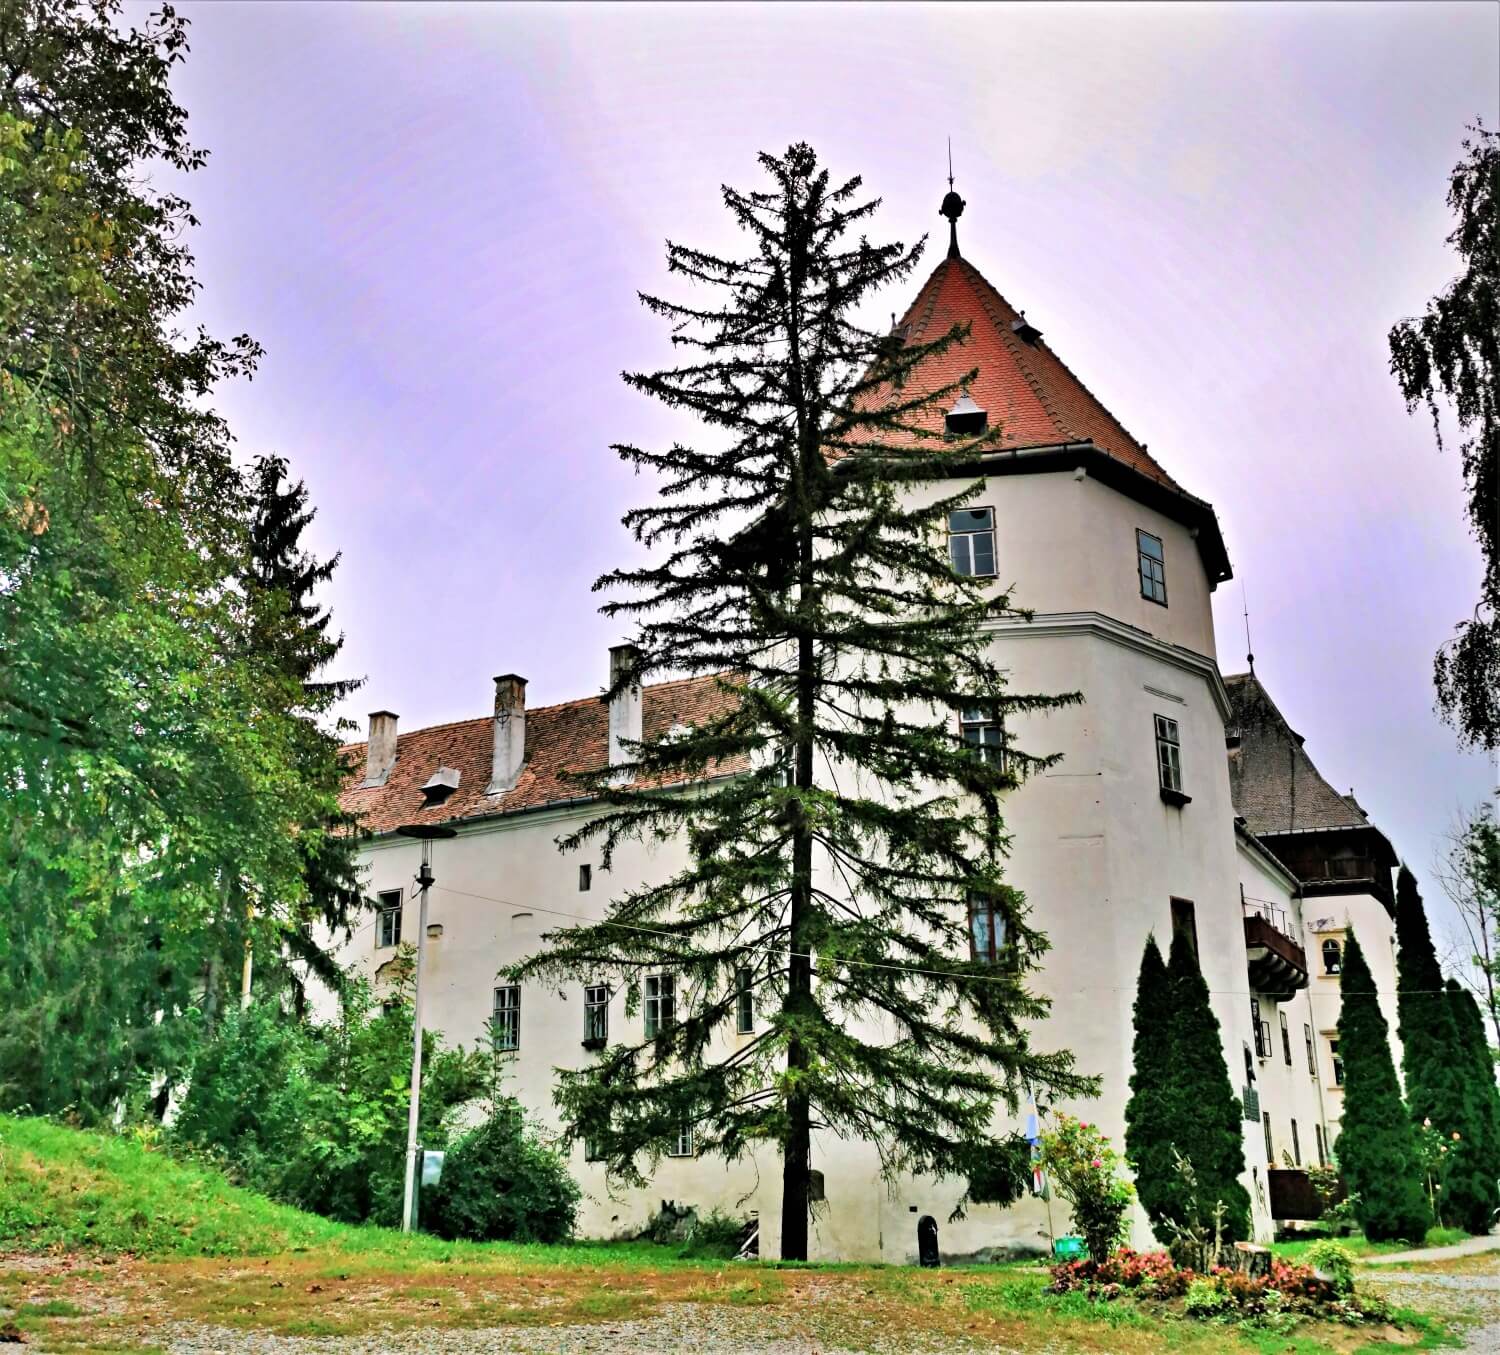 Kemény Castle in Brâncovenești